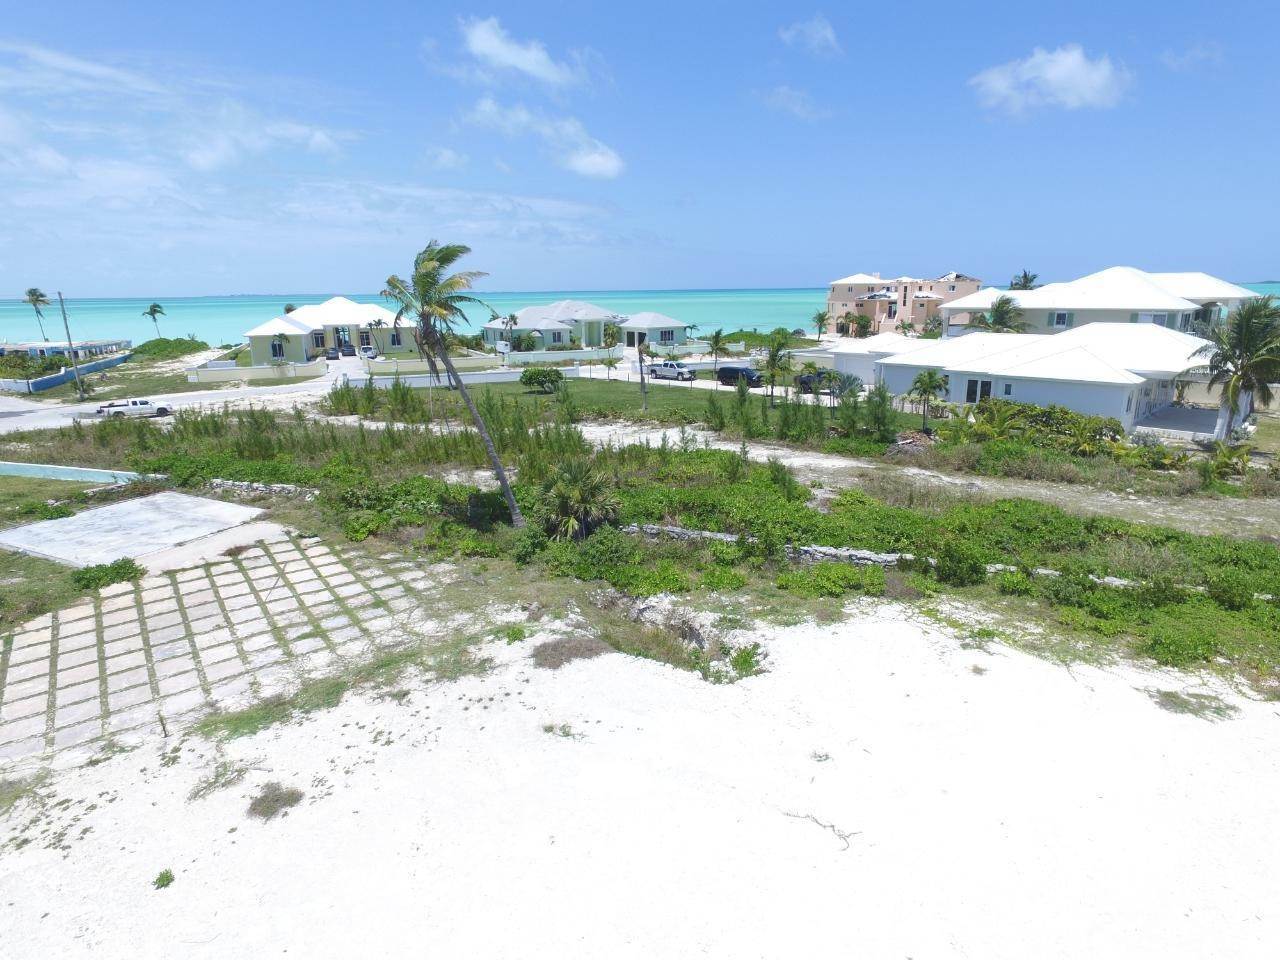 7. Lots / Acreage for Sale at Windward Beach, Treasure Cay, Abaco, Bahamas